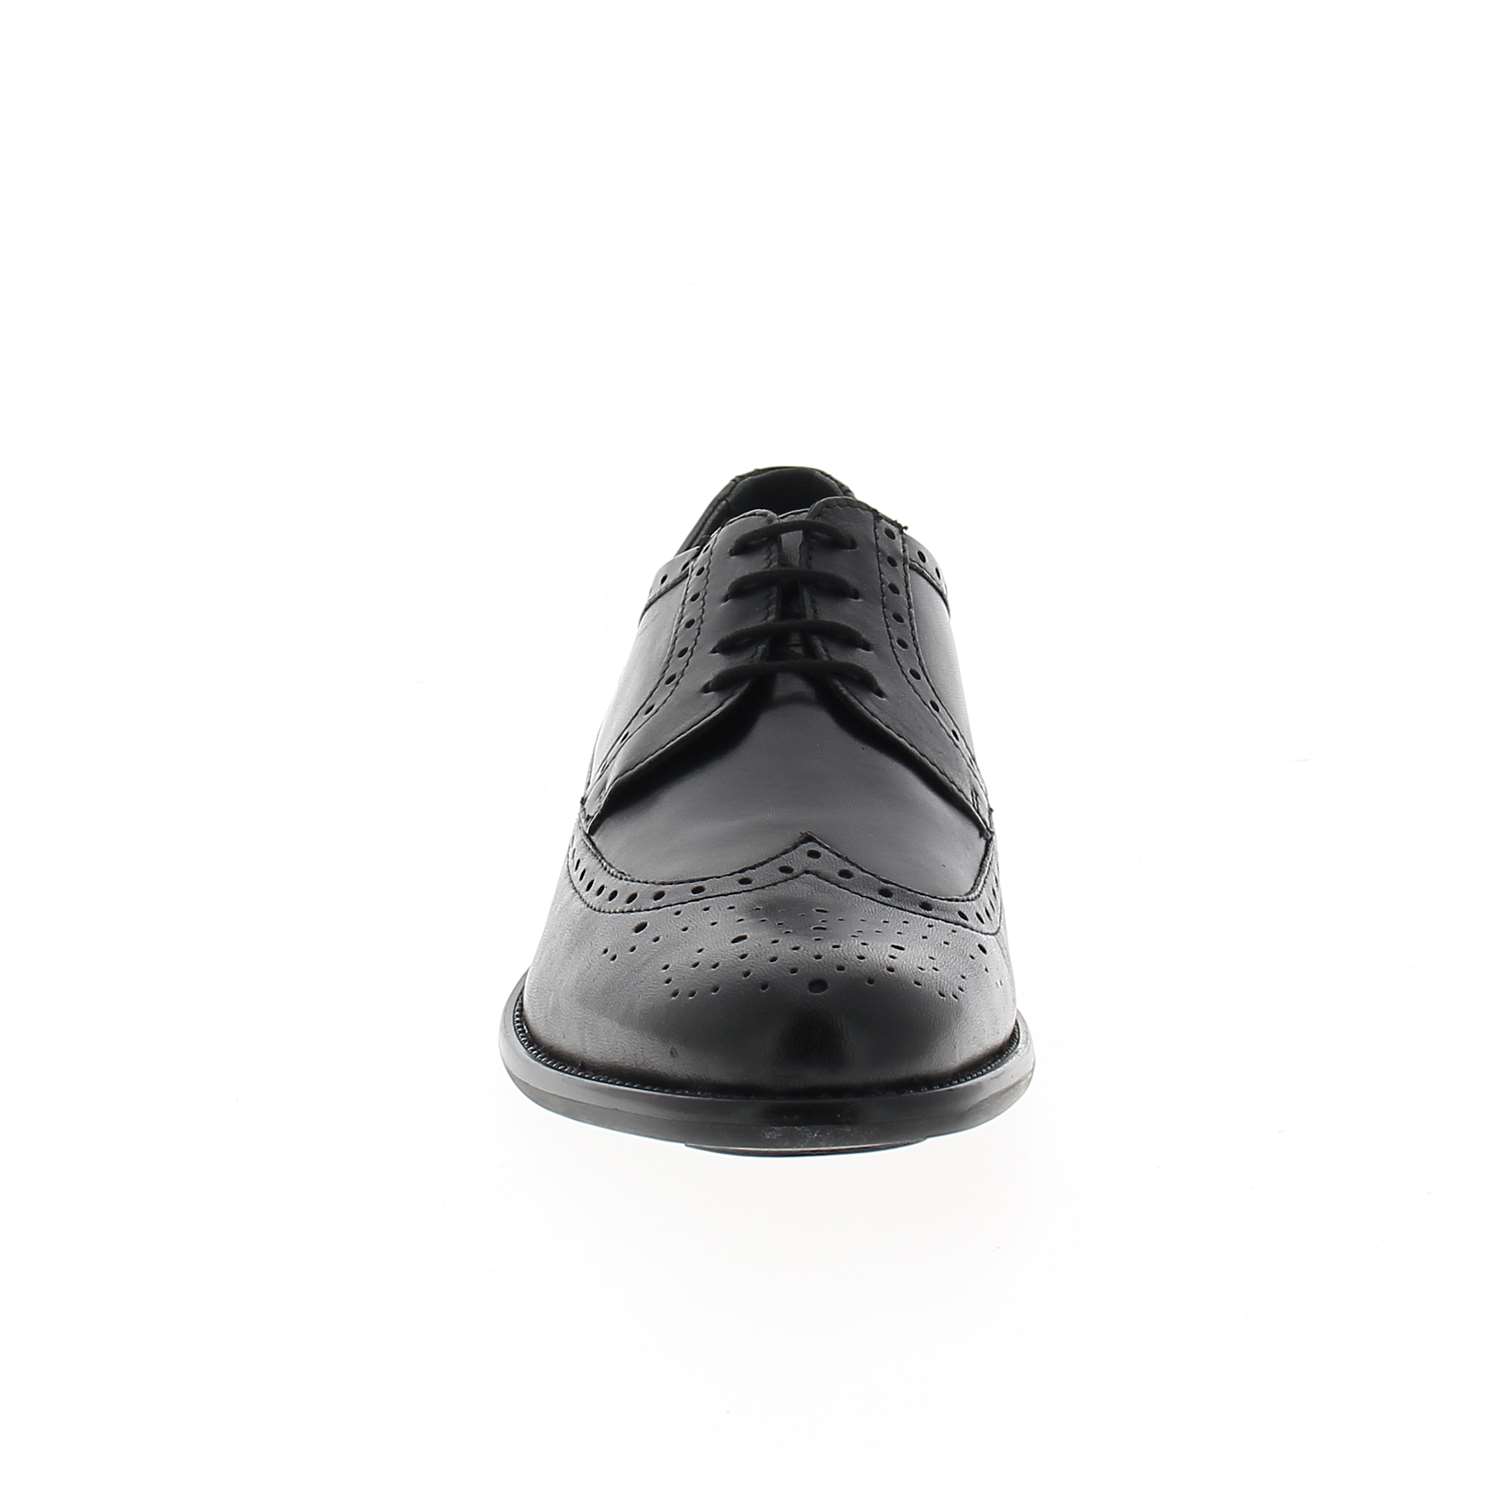 03 - APAZ - XAPI - Chaussures à lacets - Cuir / textile